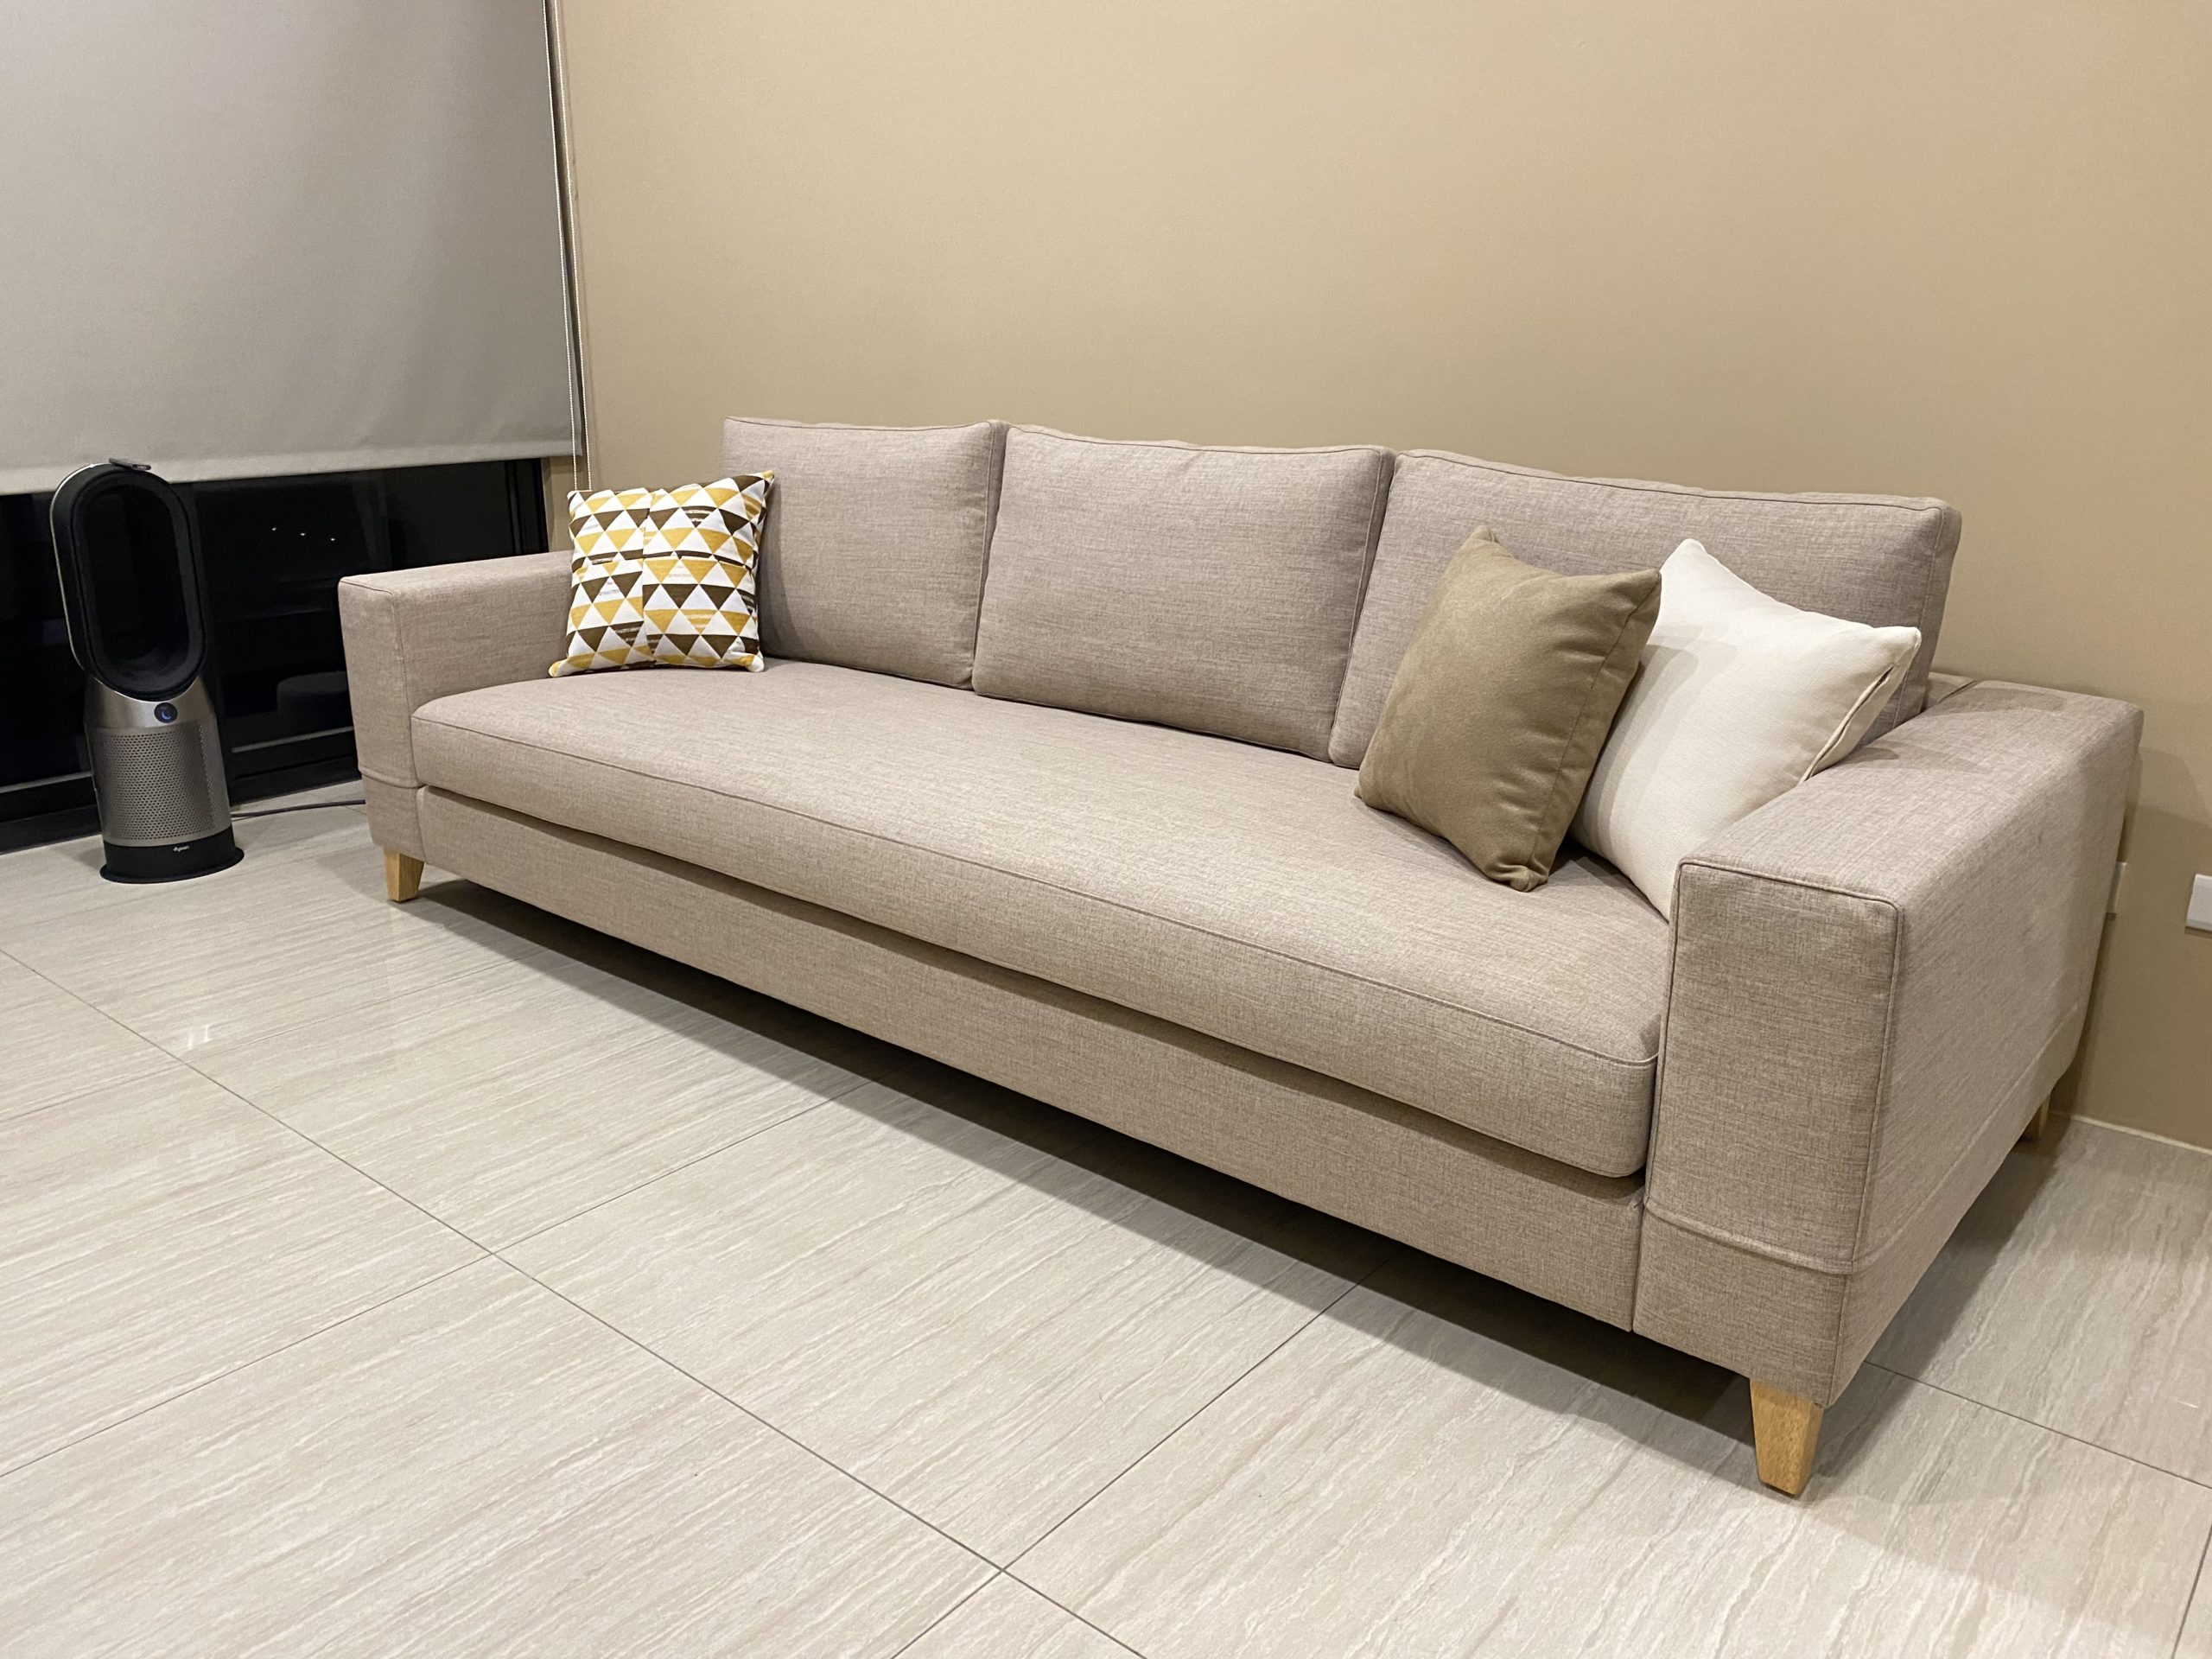 【客戶案例分享】台中太平CHOCO方正型布沙發訂製